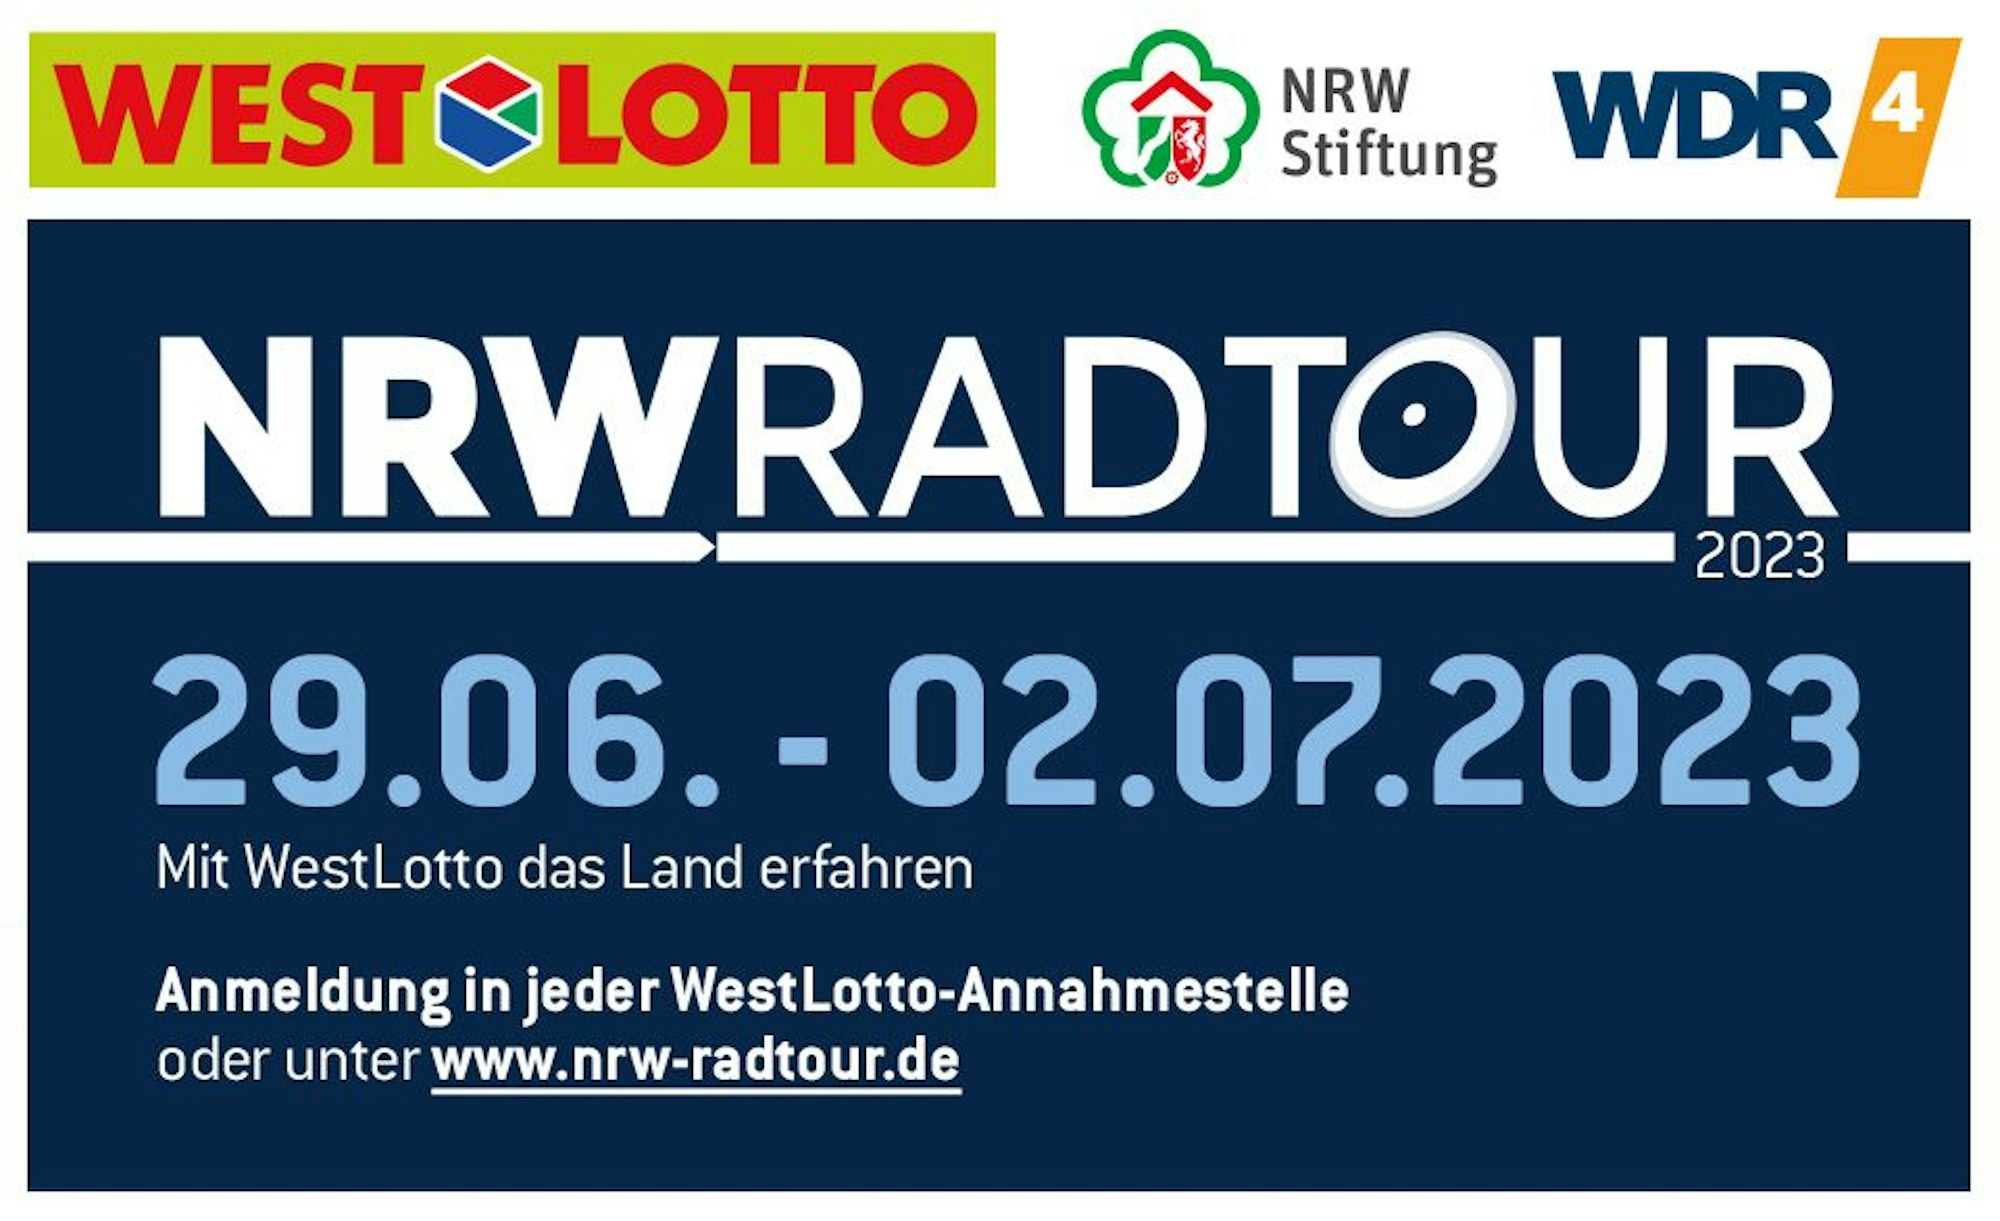 Infobild zur NRW Radtour 2023 von WestLotto